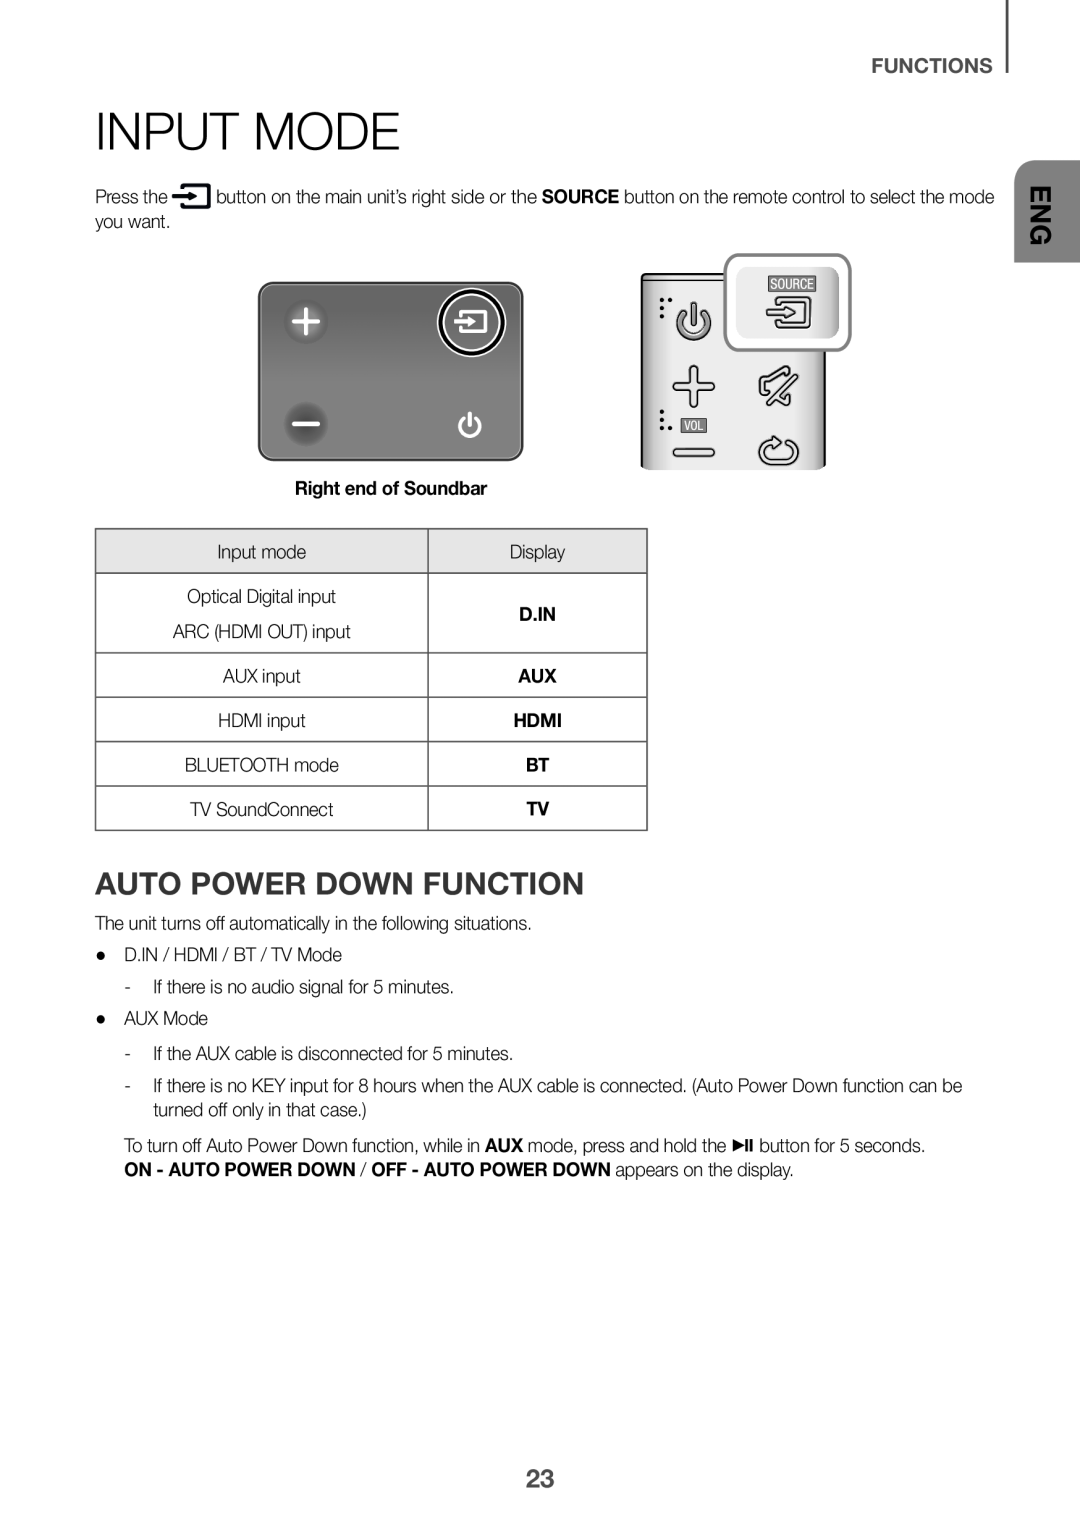 Samsung HW-K650/XN, HW-K651/EN, HW-K650/EN manual Input Mode, Auto Power Down Function, Functions, Right end of Soundbar 